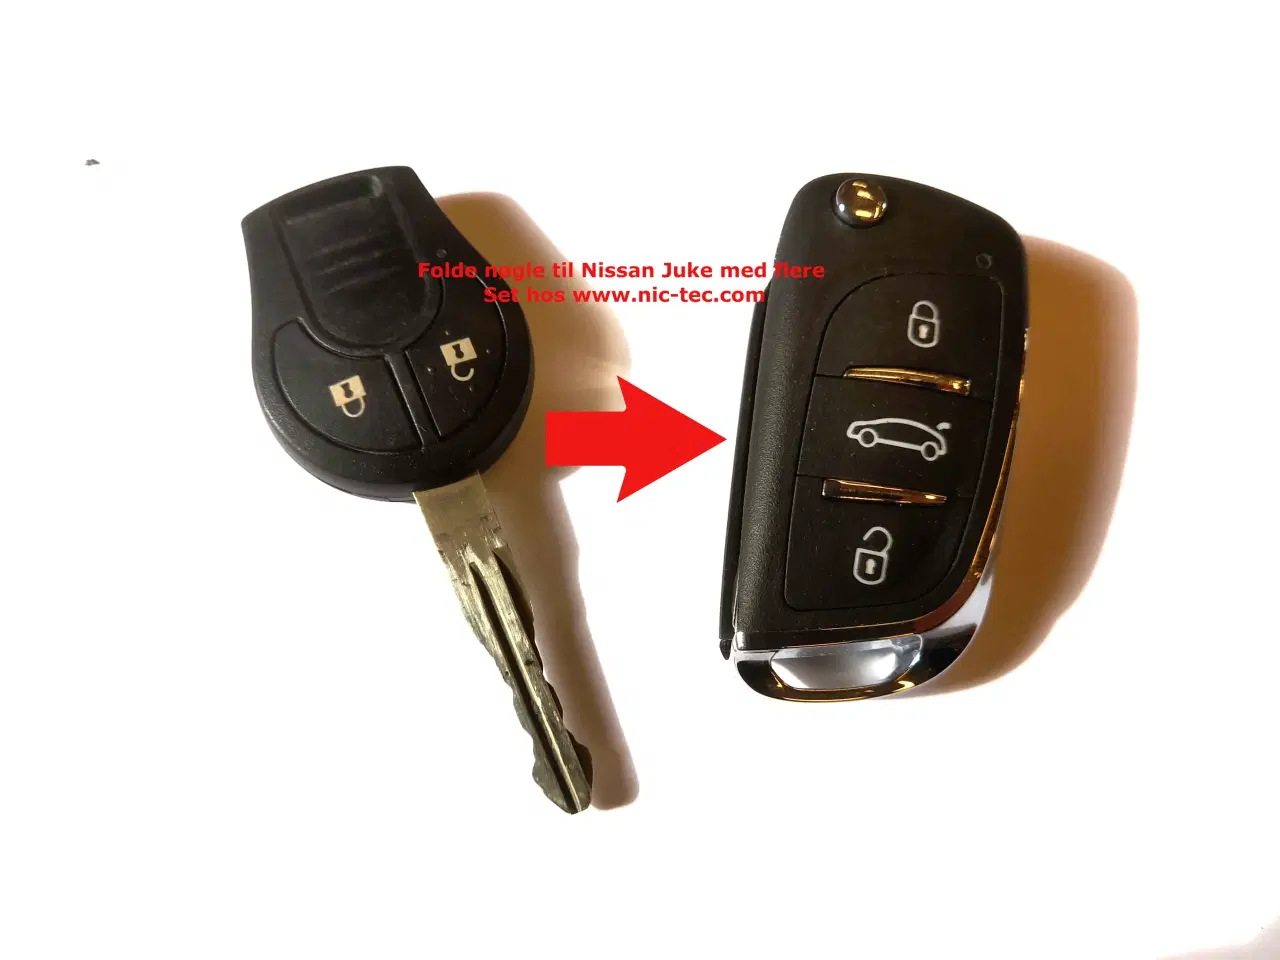 Billede 1 - Nissan Nøgle , kan nu leveres som folde nøgle til flere modeller bla juke